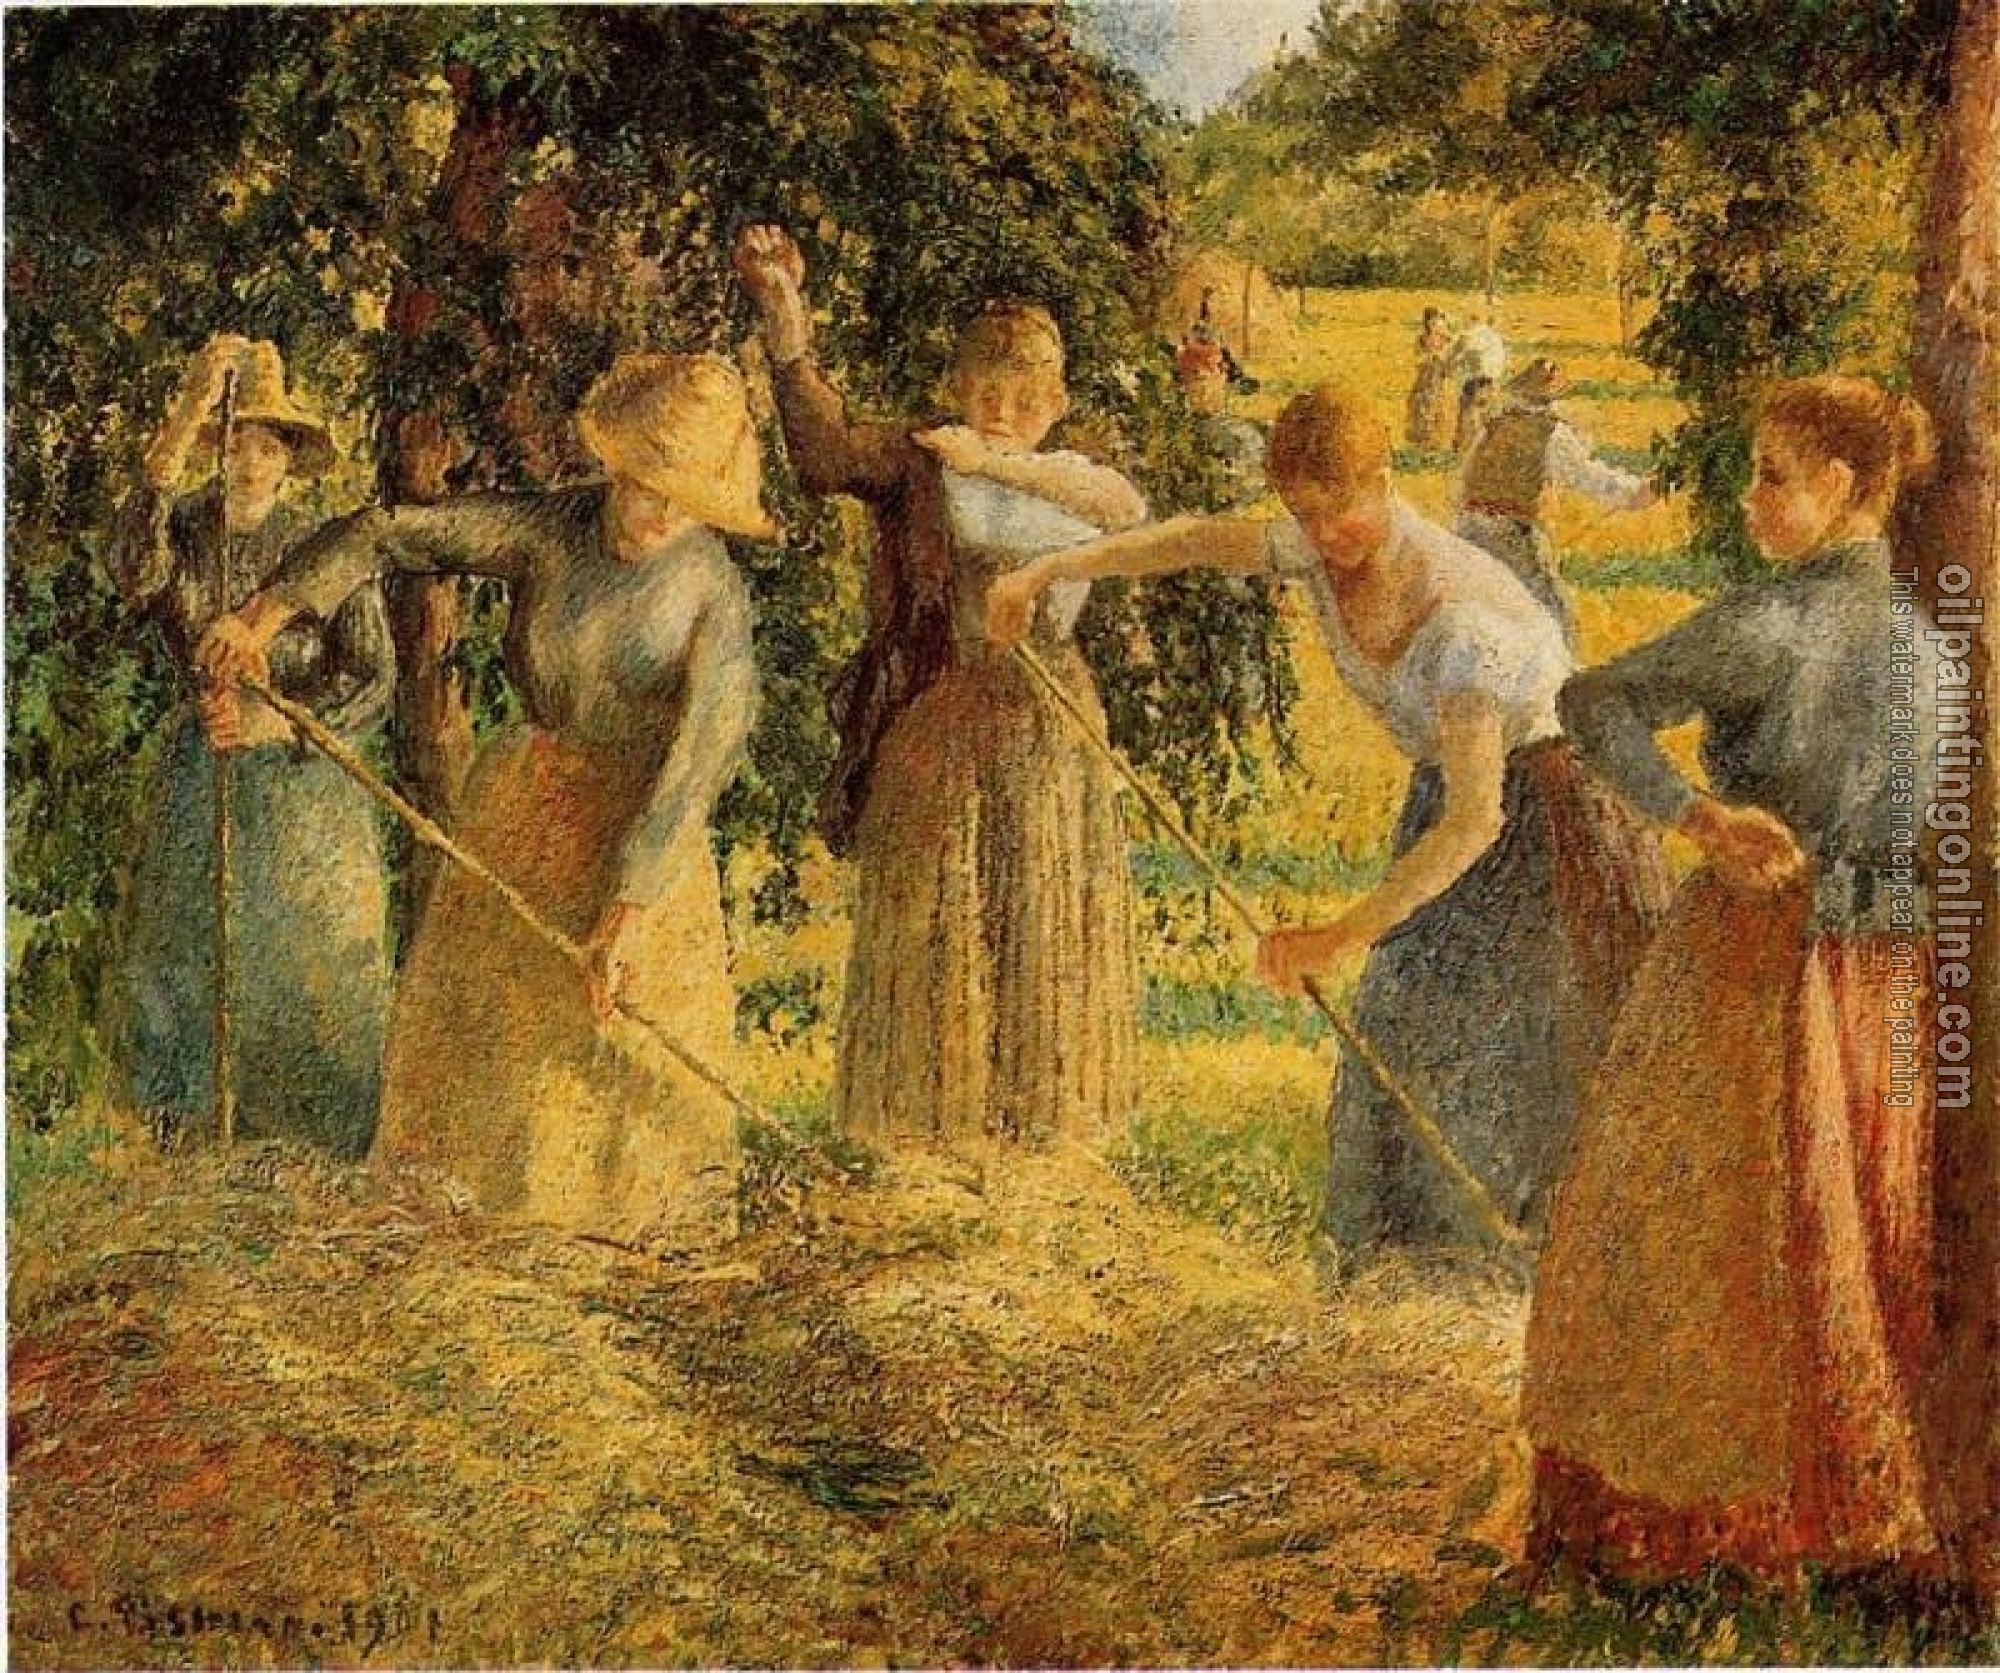 Pissarro, Camille - Harvest at Eragny